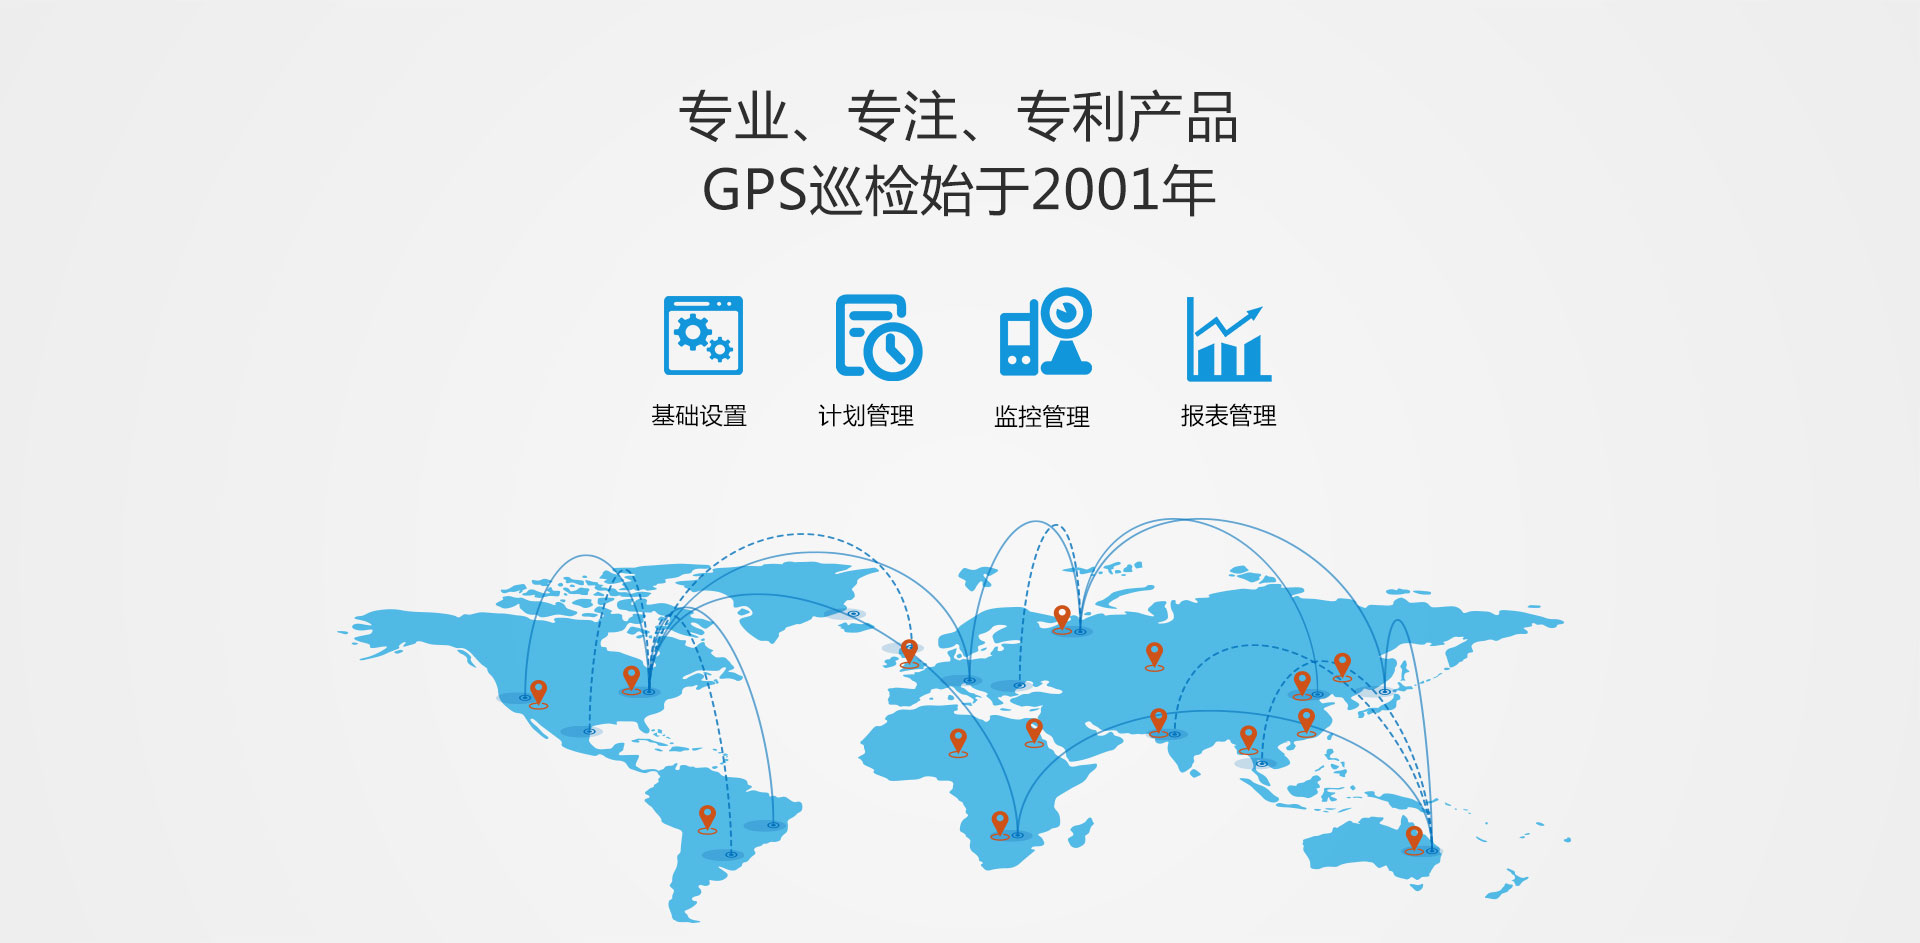 GPS巡检始于2001